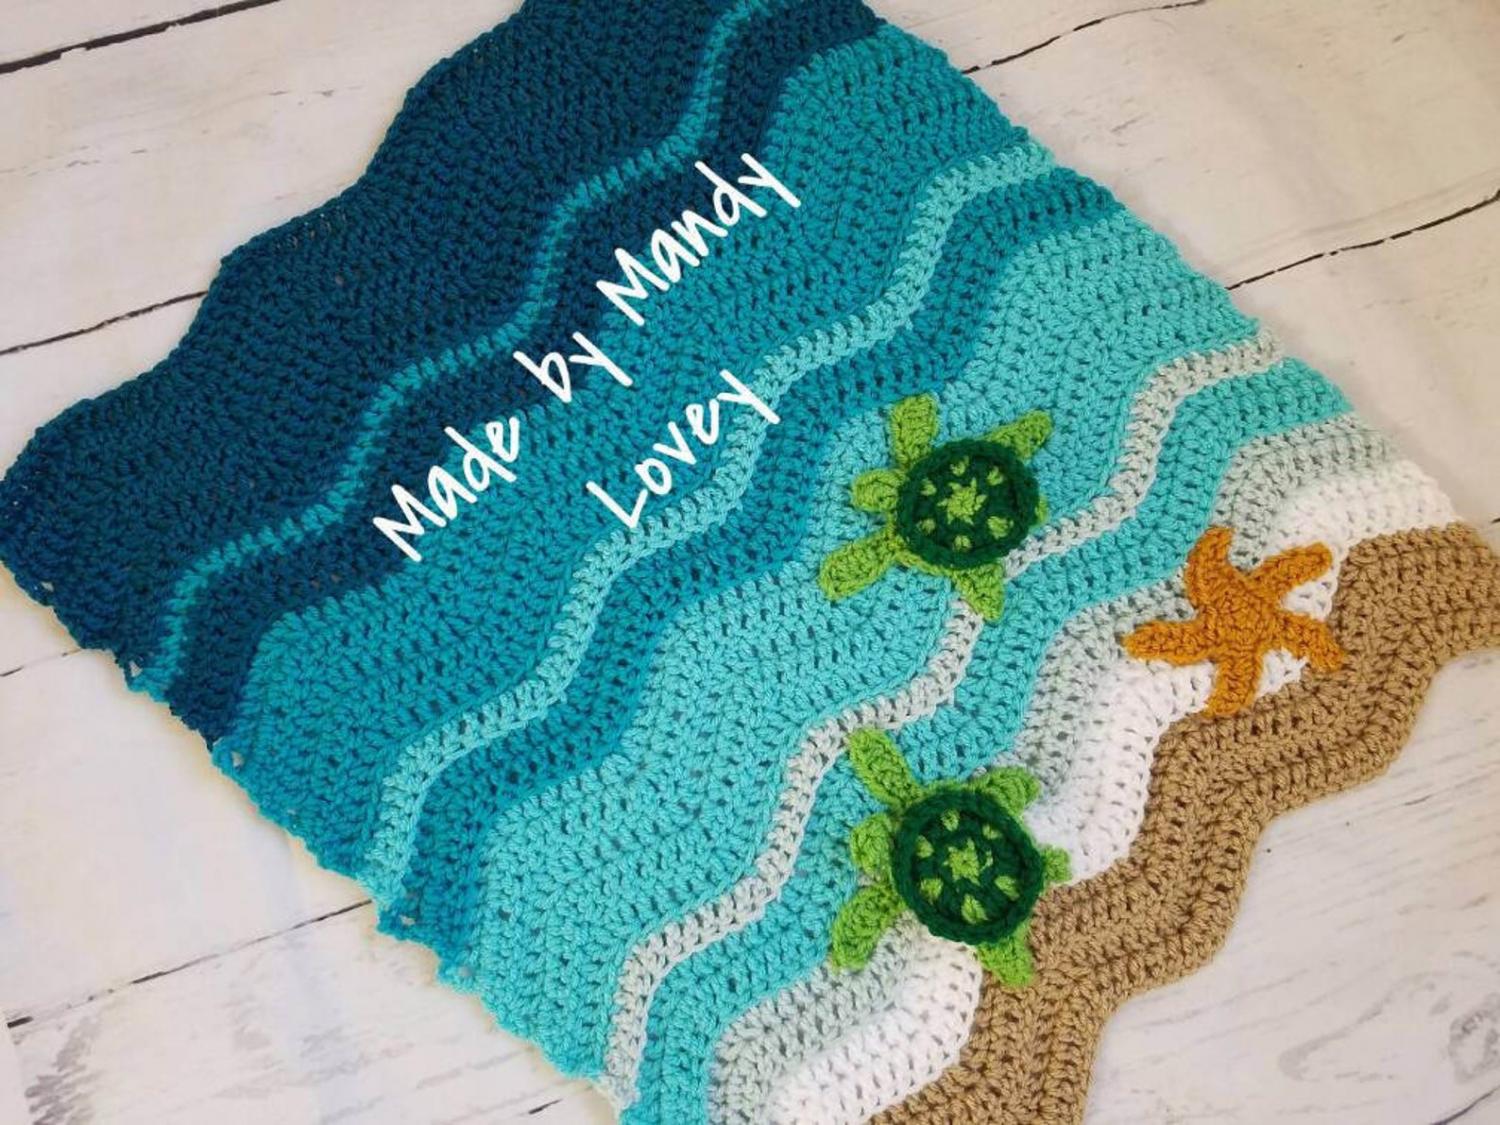 Sea Turtle Beach Blanket - DIY Crochet Sea Turtles Entering The Water On Beach Blanket